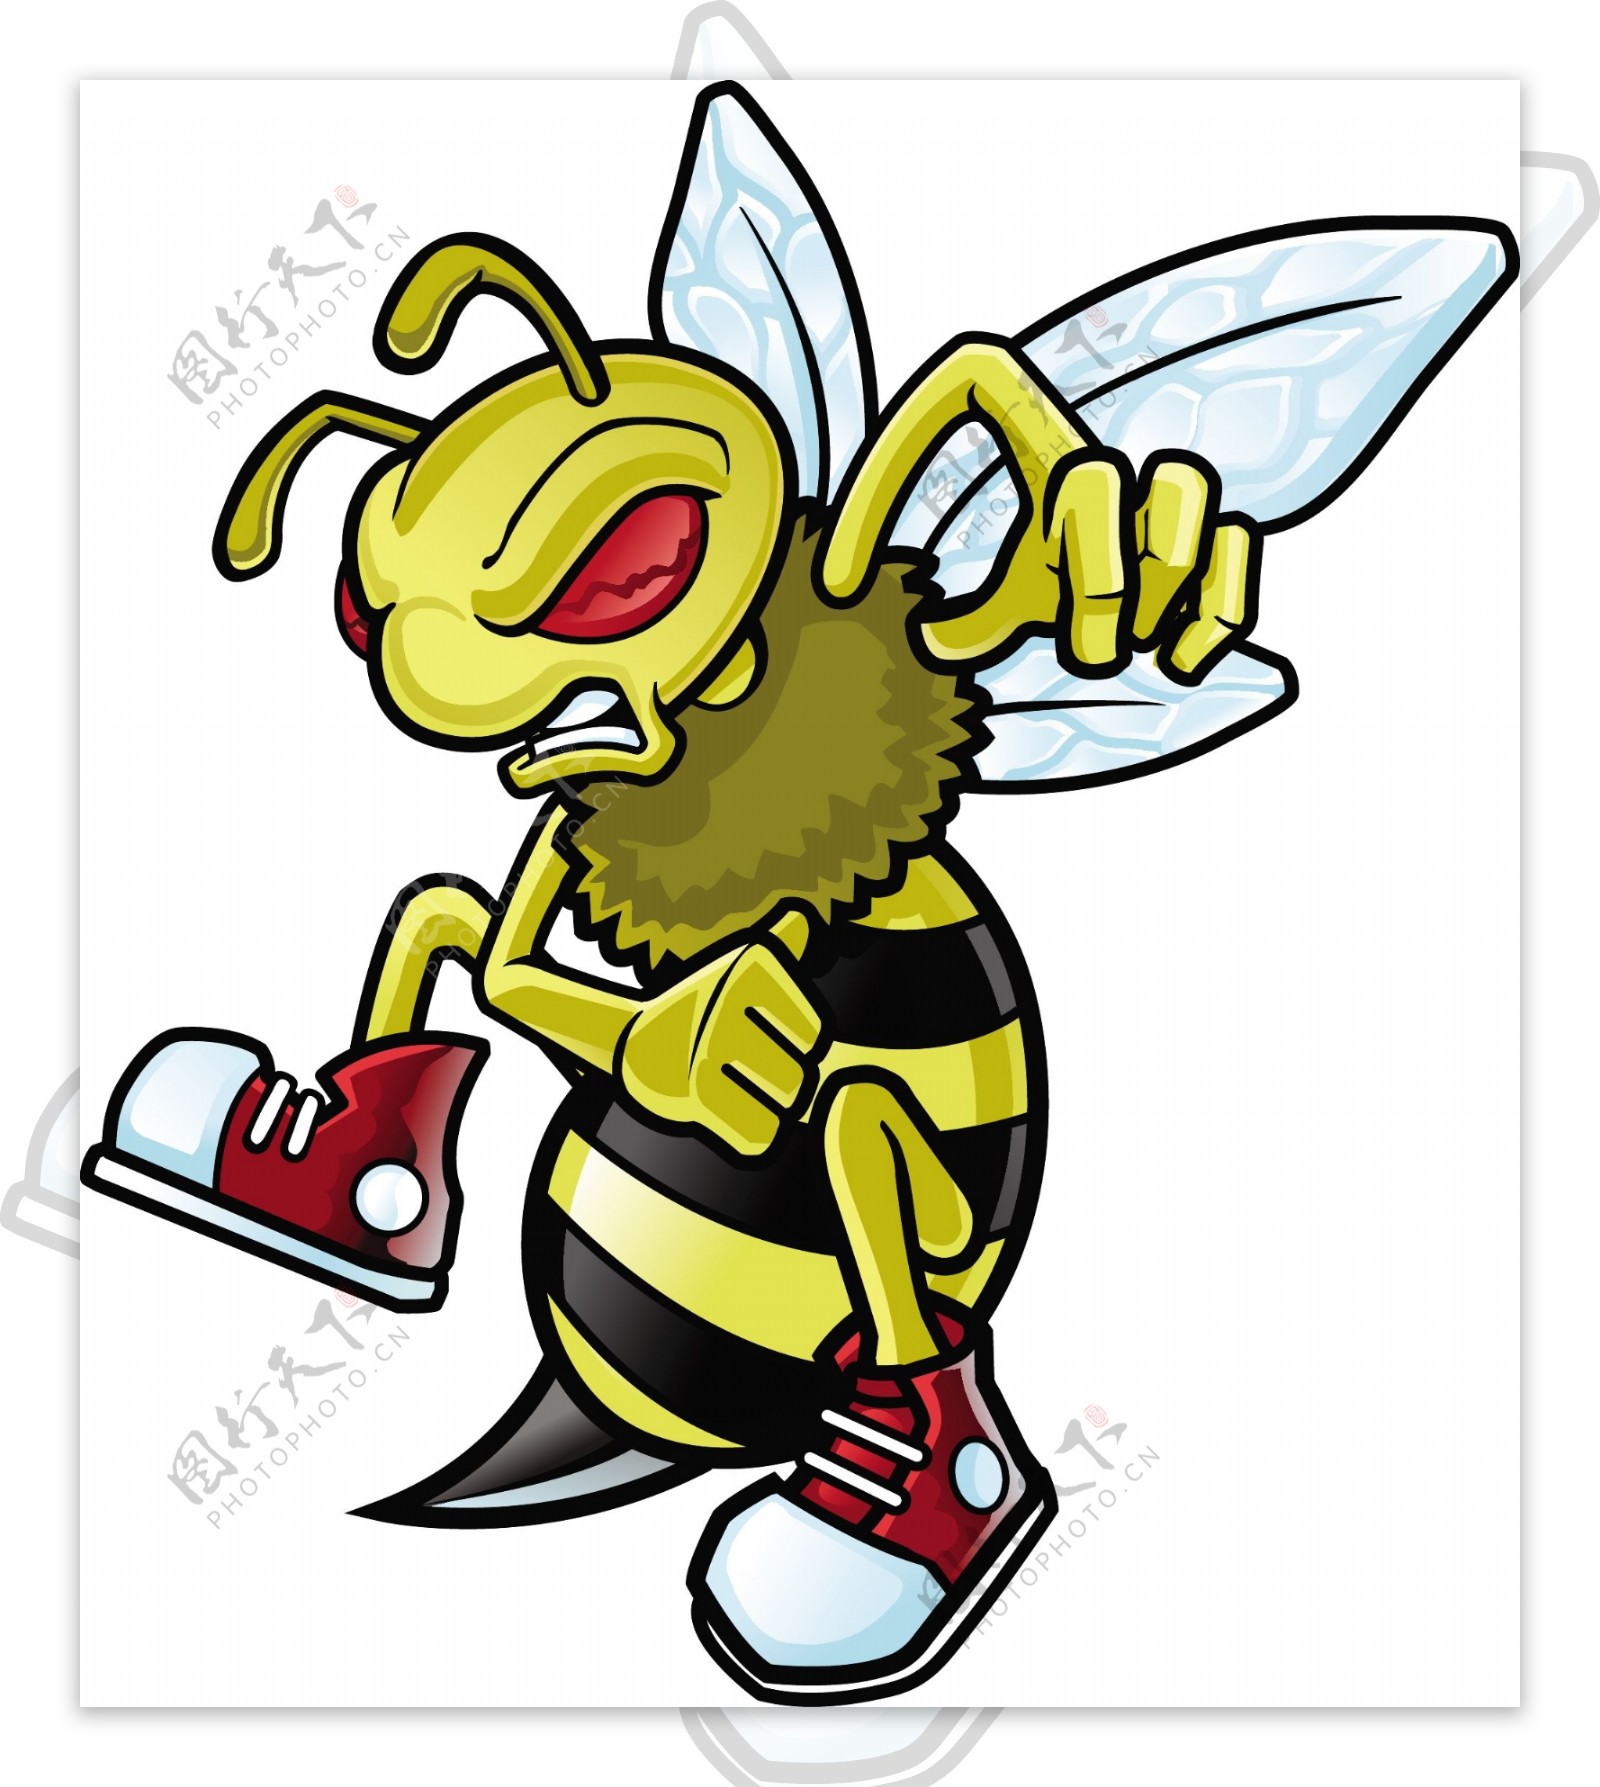 矢量卡通蜜蜂设计